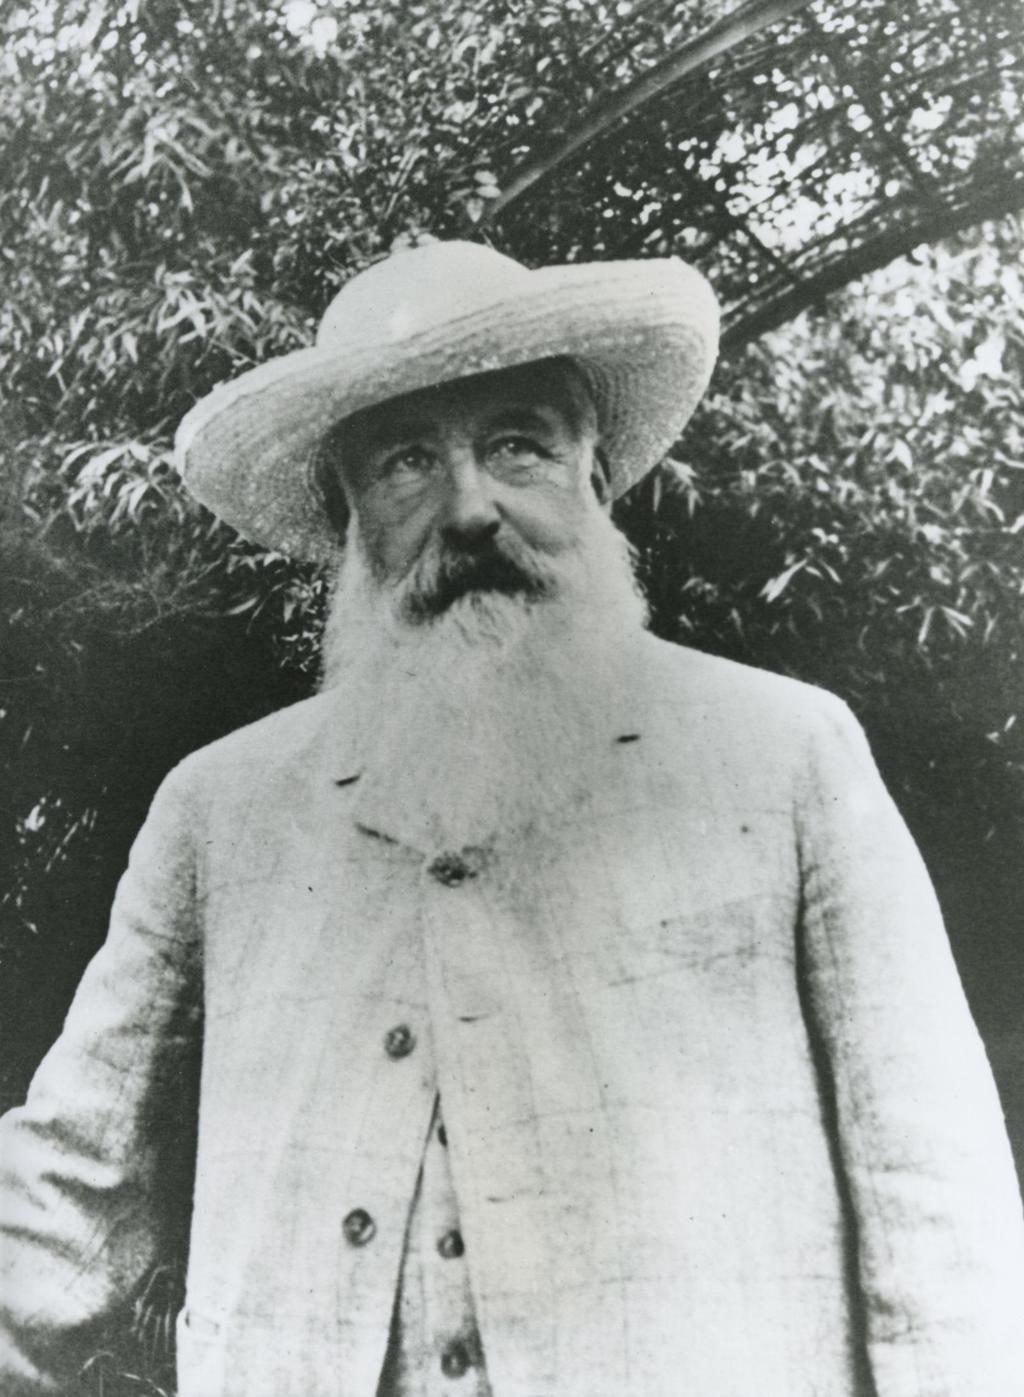 Fotó: Fondation Claude Monet Giverny Az impresszionizmus jeles képviselője és egyik szülőatyja 1841-ben született Párizsban.